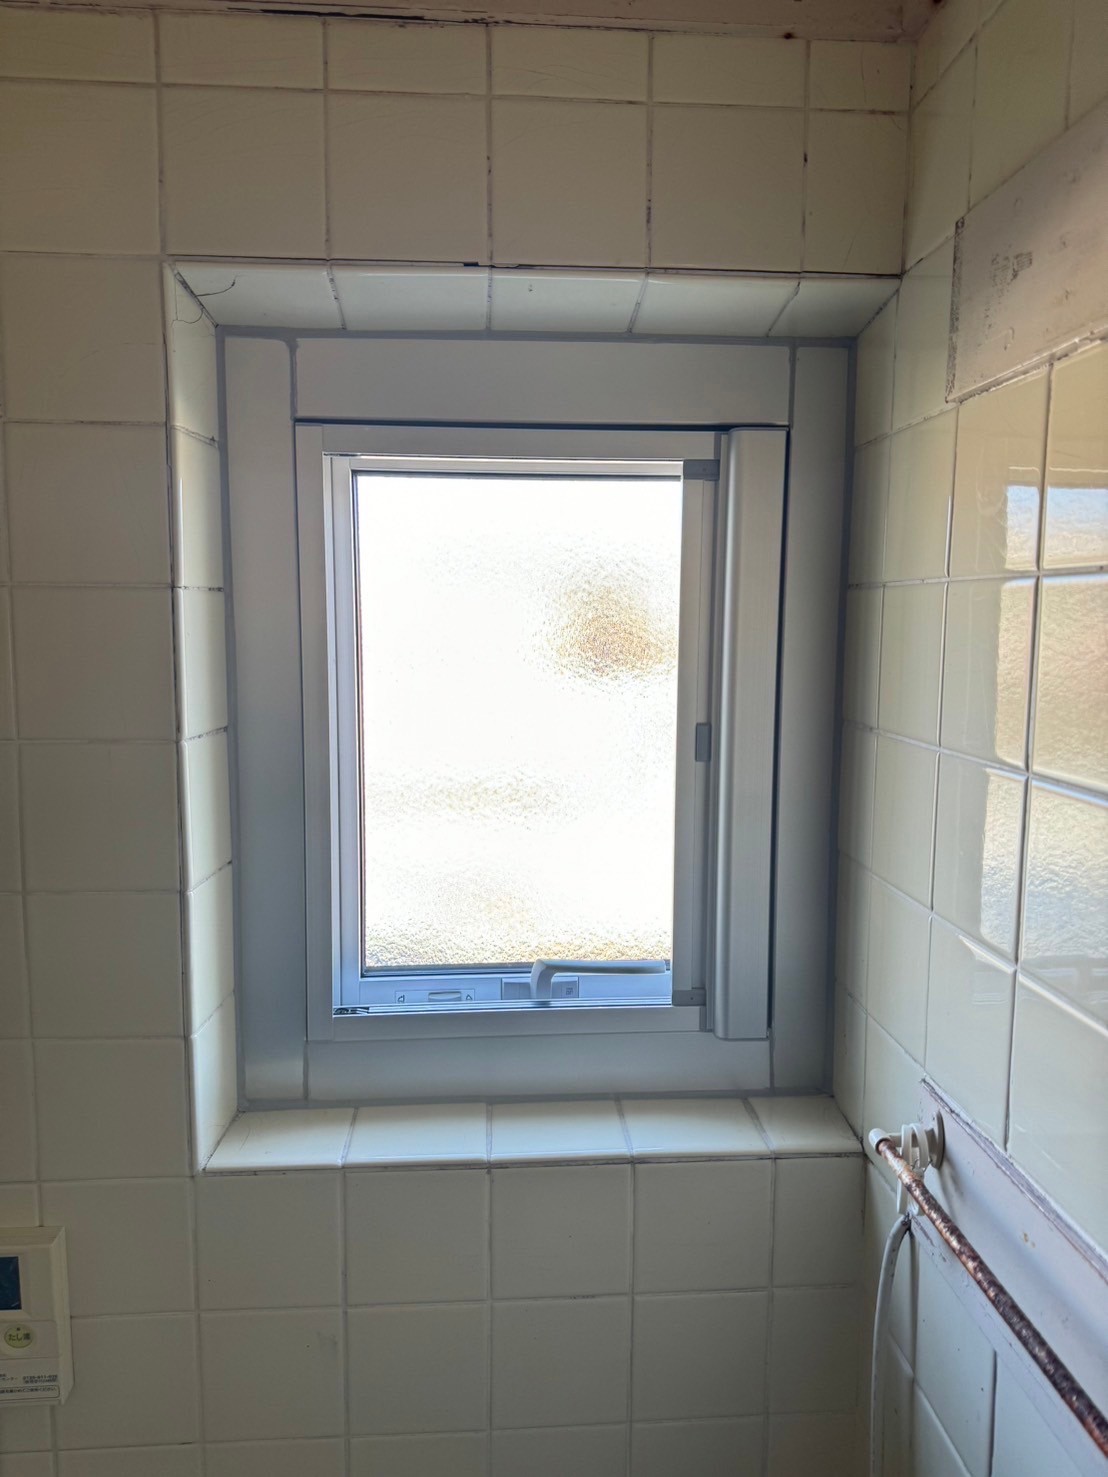 浴室の古い窓を最新の窓に～千葉県船橋市 管理会社様からのご依頼～